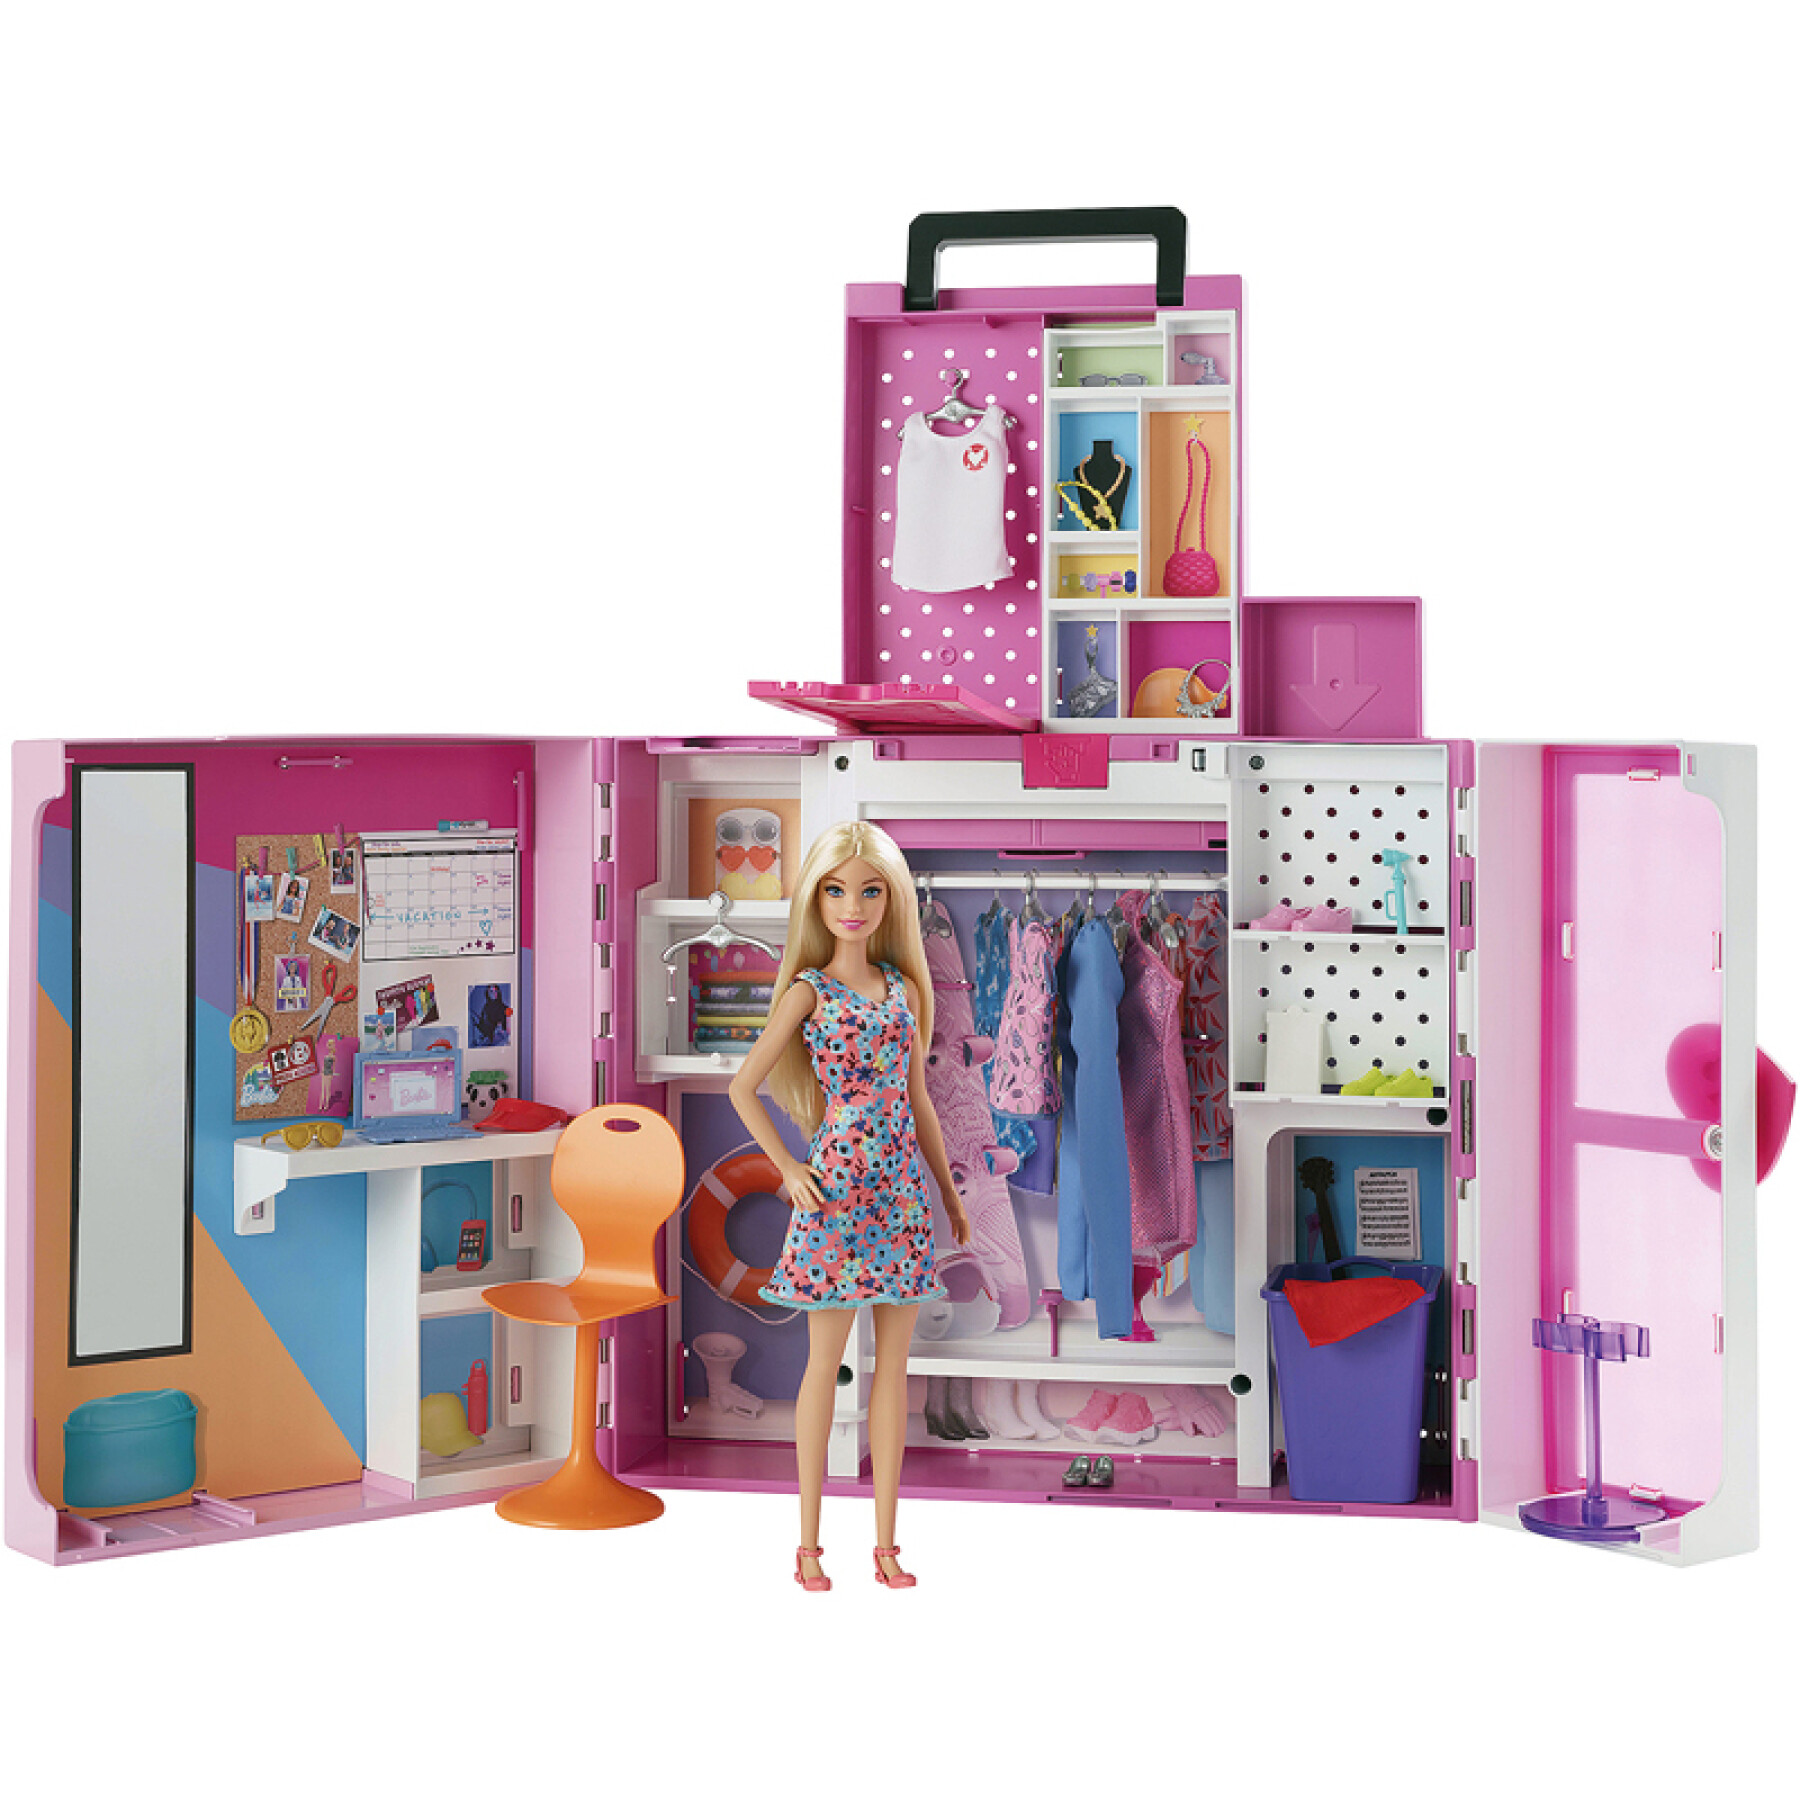 Barbiepuppe und ihr Mega-Ankleidezimmer Mattel France